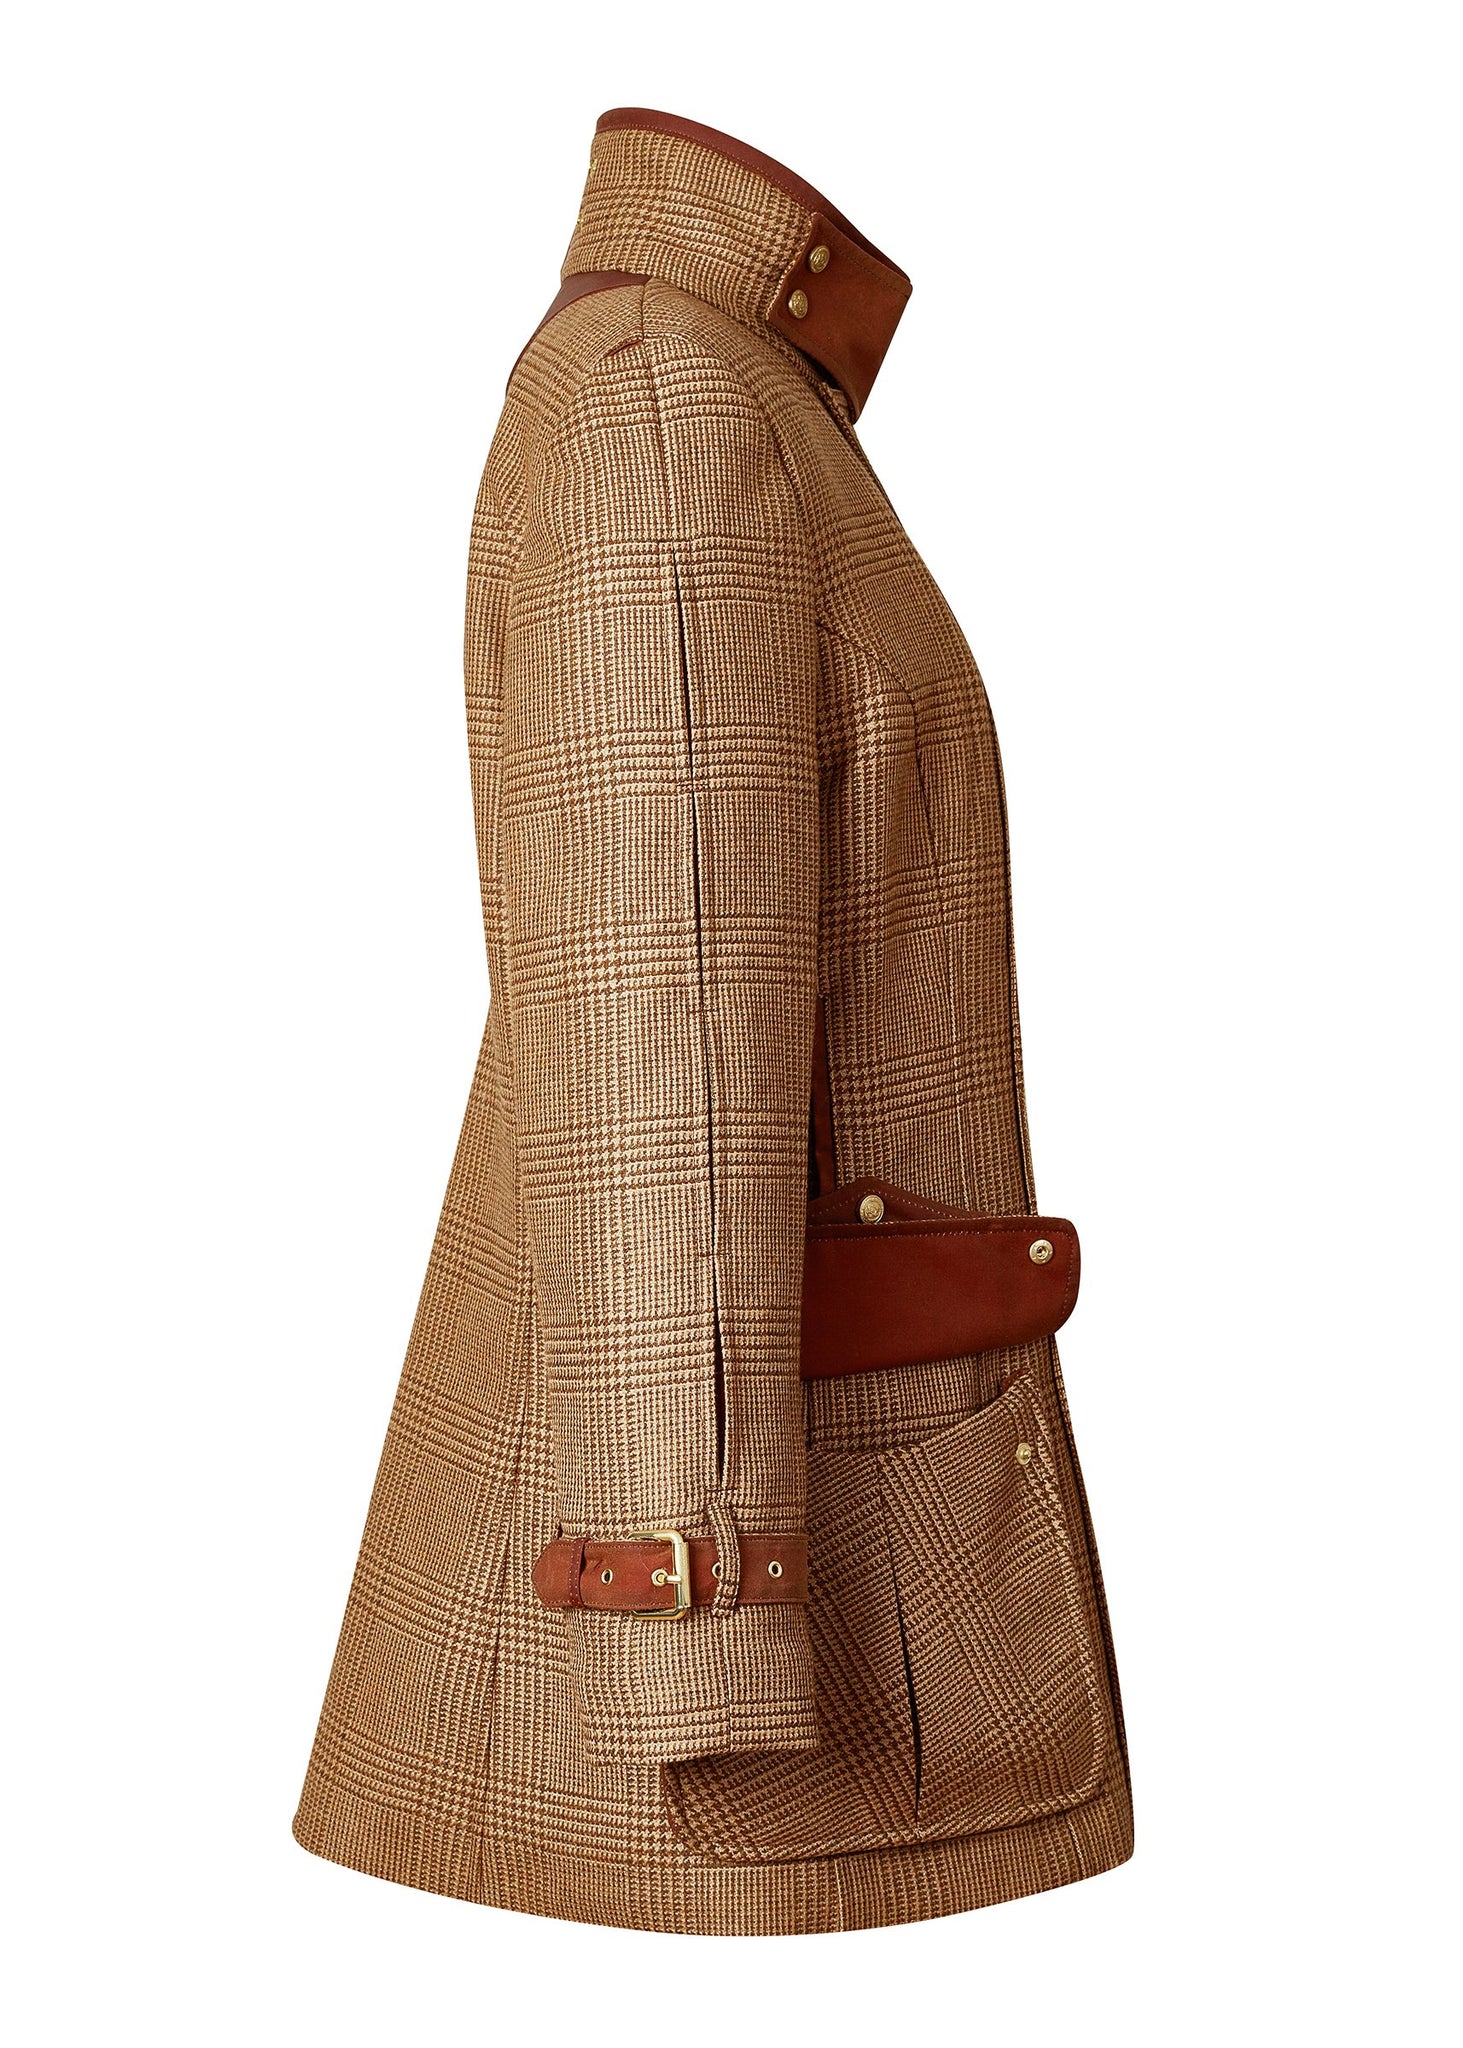 Side profile of tan brown tartan tweed field coat